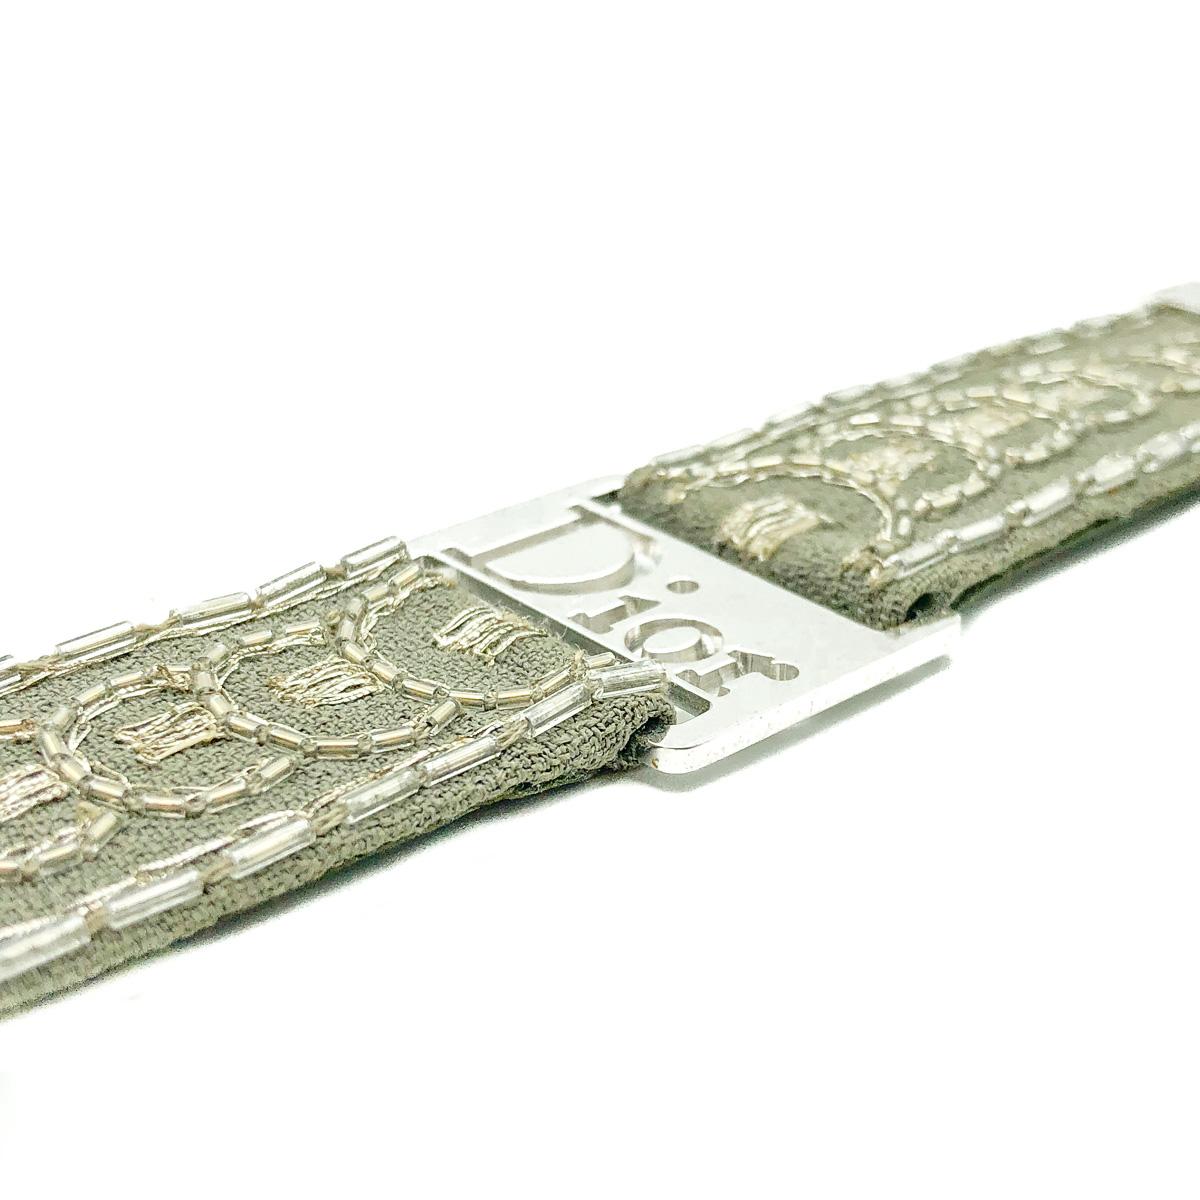 Ein ultracooles Statement mit diesem Khaki-Armband von Vintage Dior.
Mit einem bestickten, khakigrauen Stoffband, das mit hochwertigen, rhodinierten Beschlägen ausgestattet ist. Die rhodinierten Enden und die große Dior-Logo-Plakette lassen das Herz